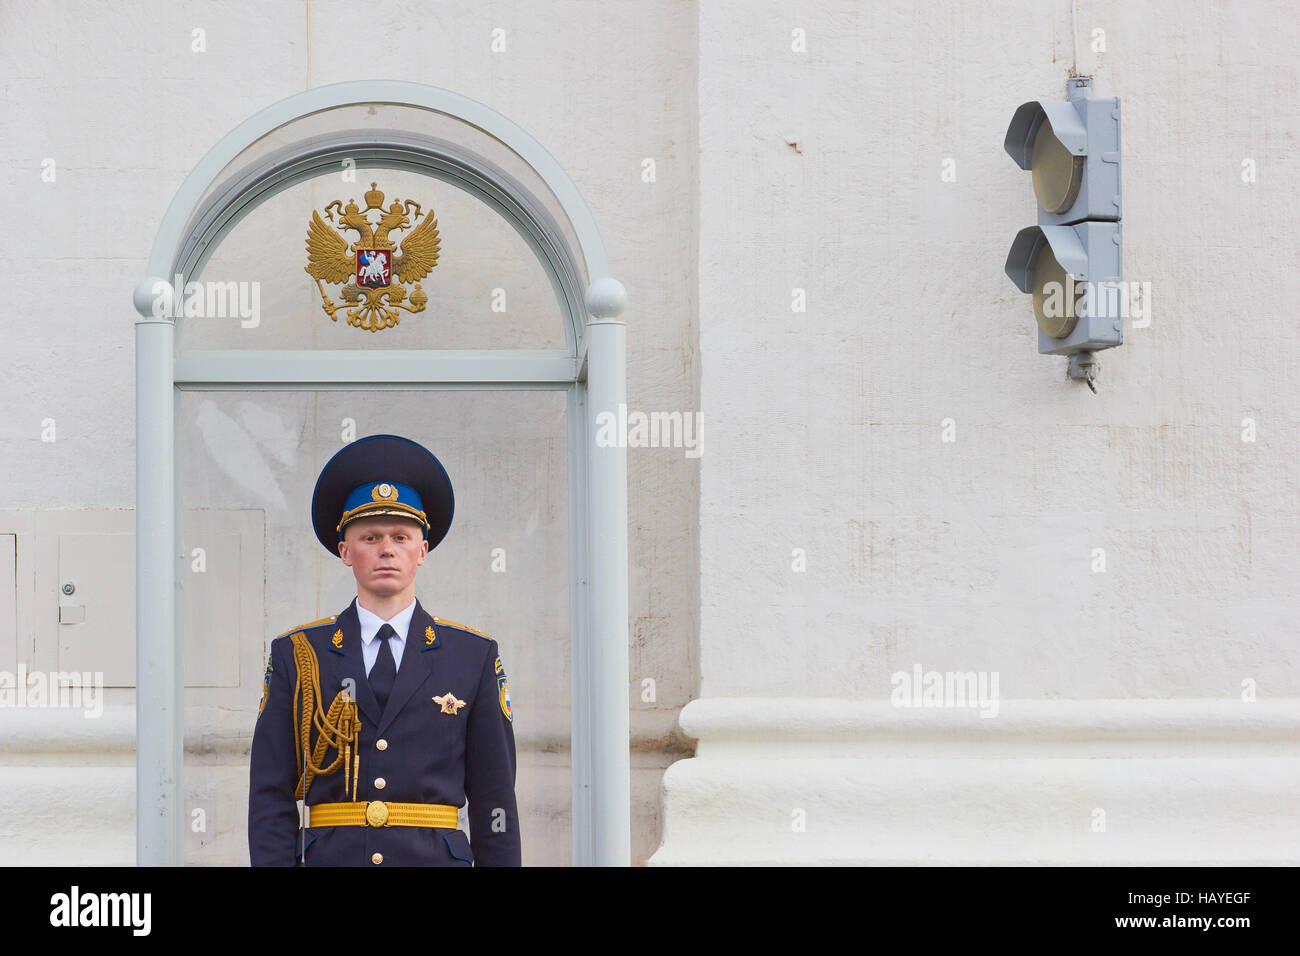 Präsidenten oder der Kreml Regiment Soldaten auf Aufgabe Kreml Moskau Russland Stockfoto